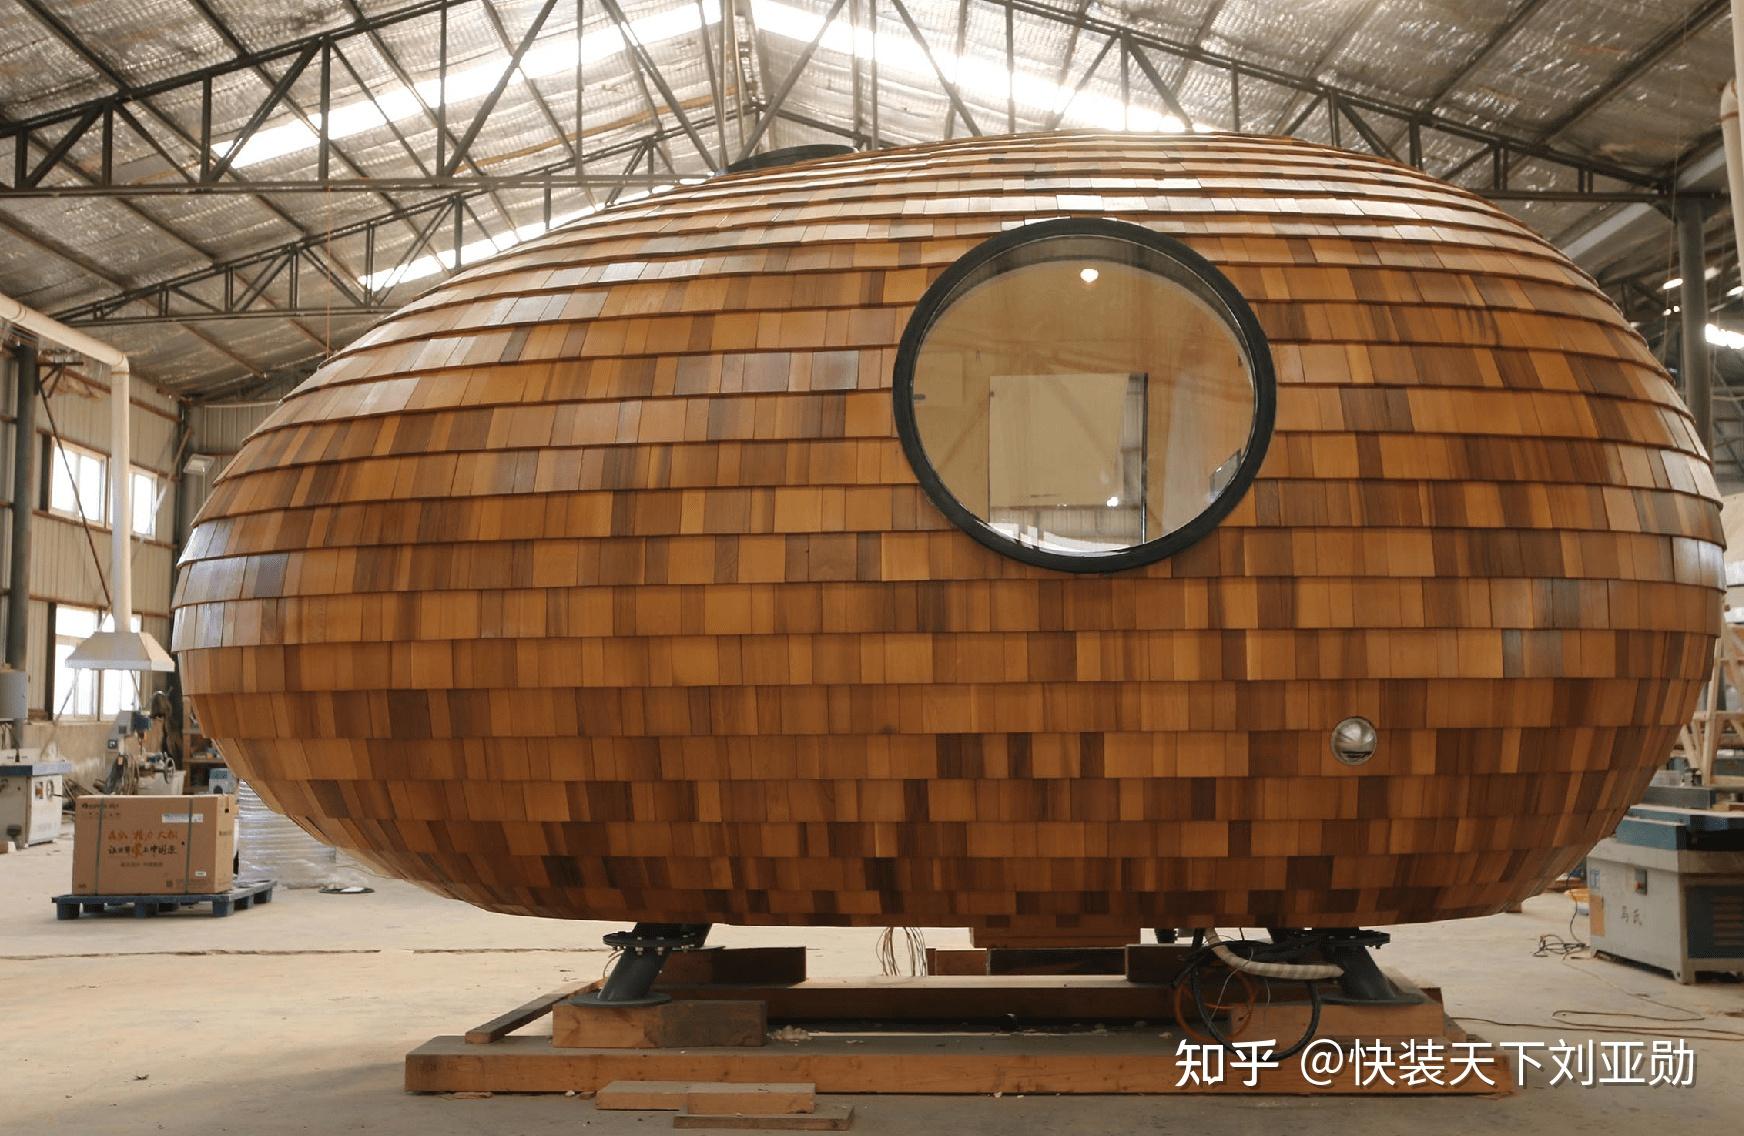 中国生产的装配式建筑“蛋蛋屋”可移动房屋落地日本富士山 - 知乎